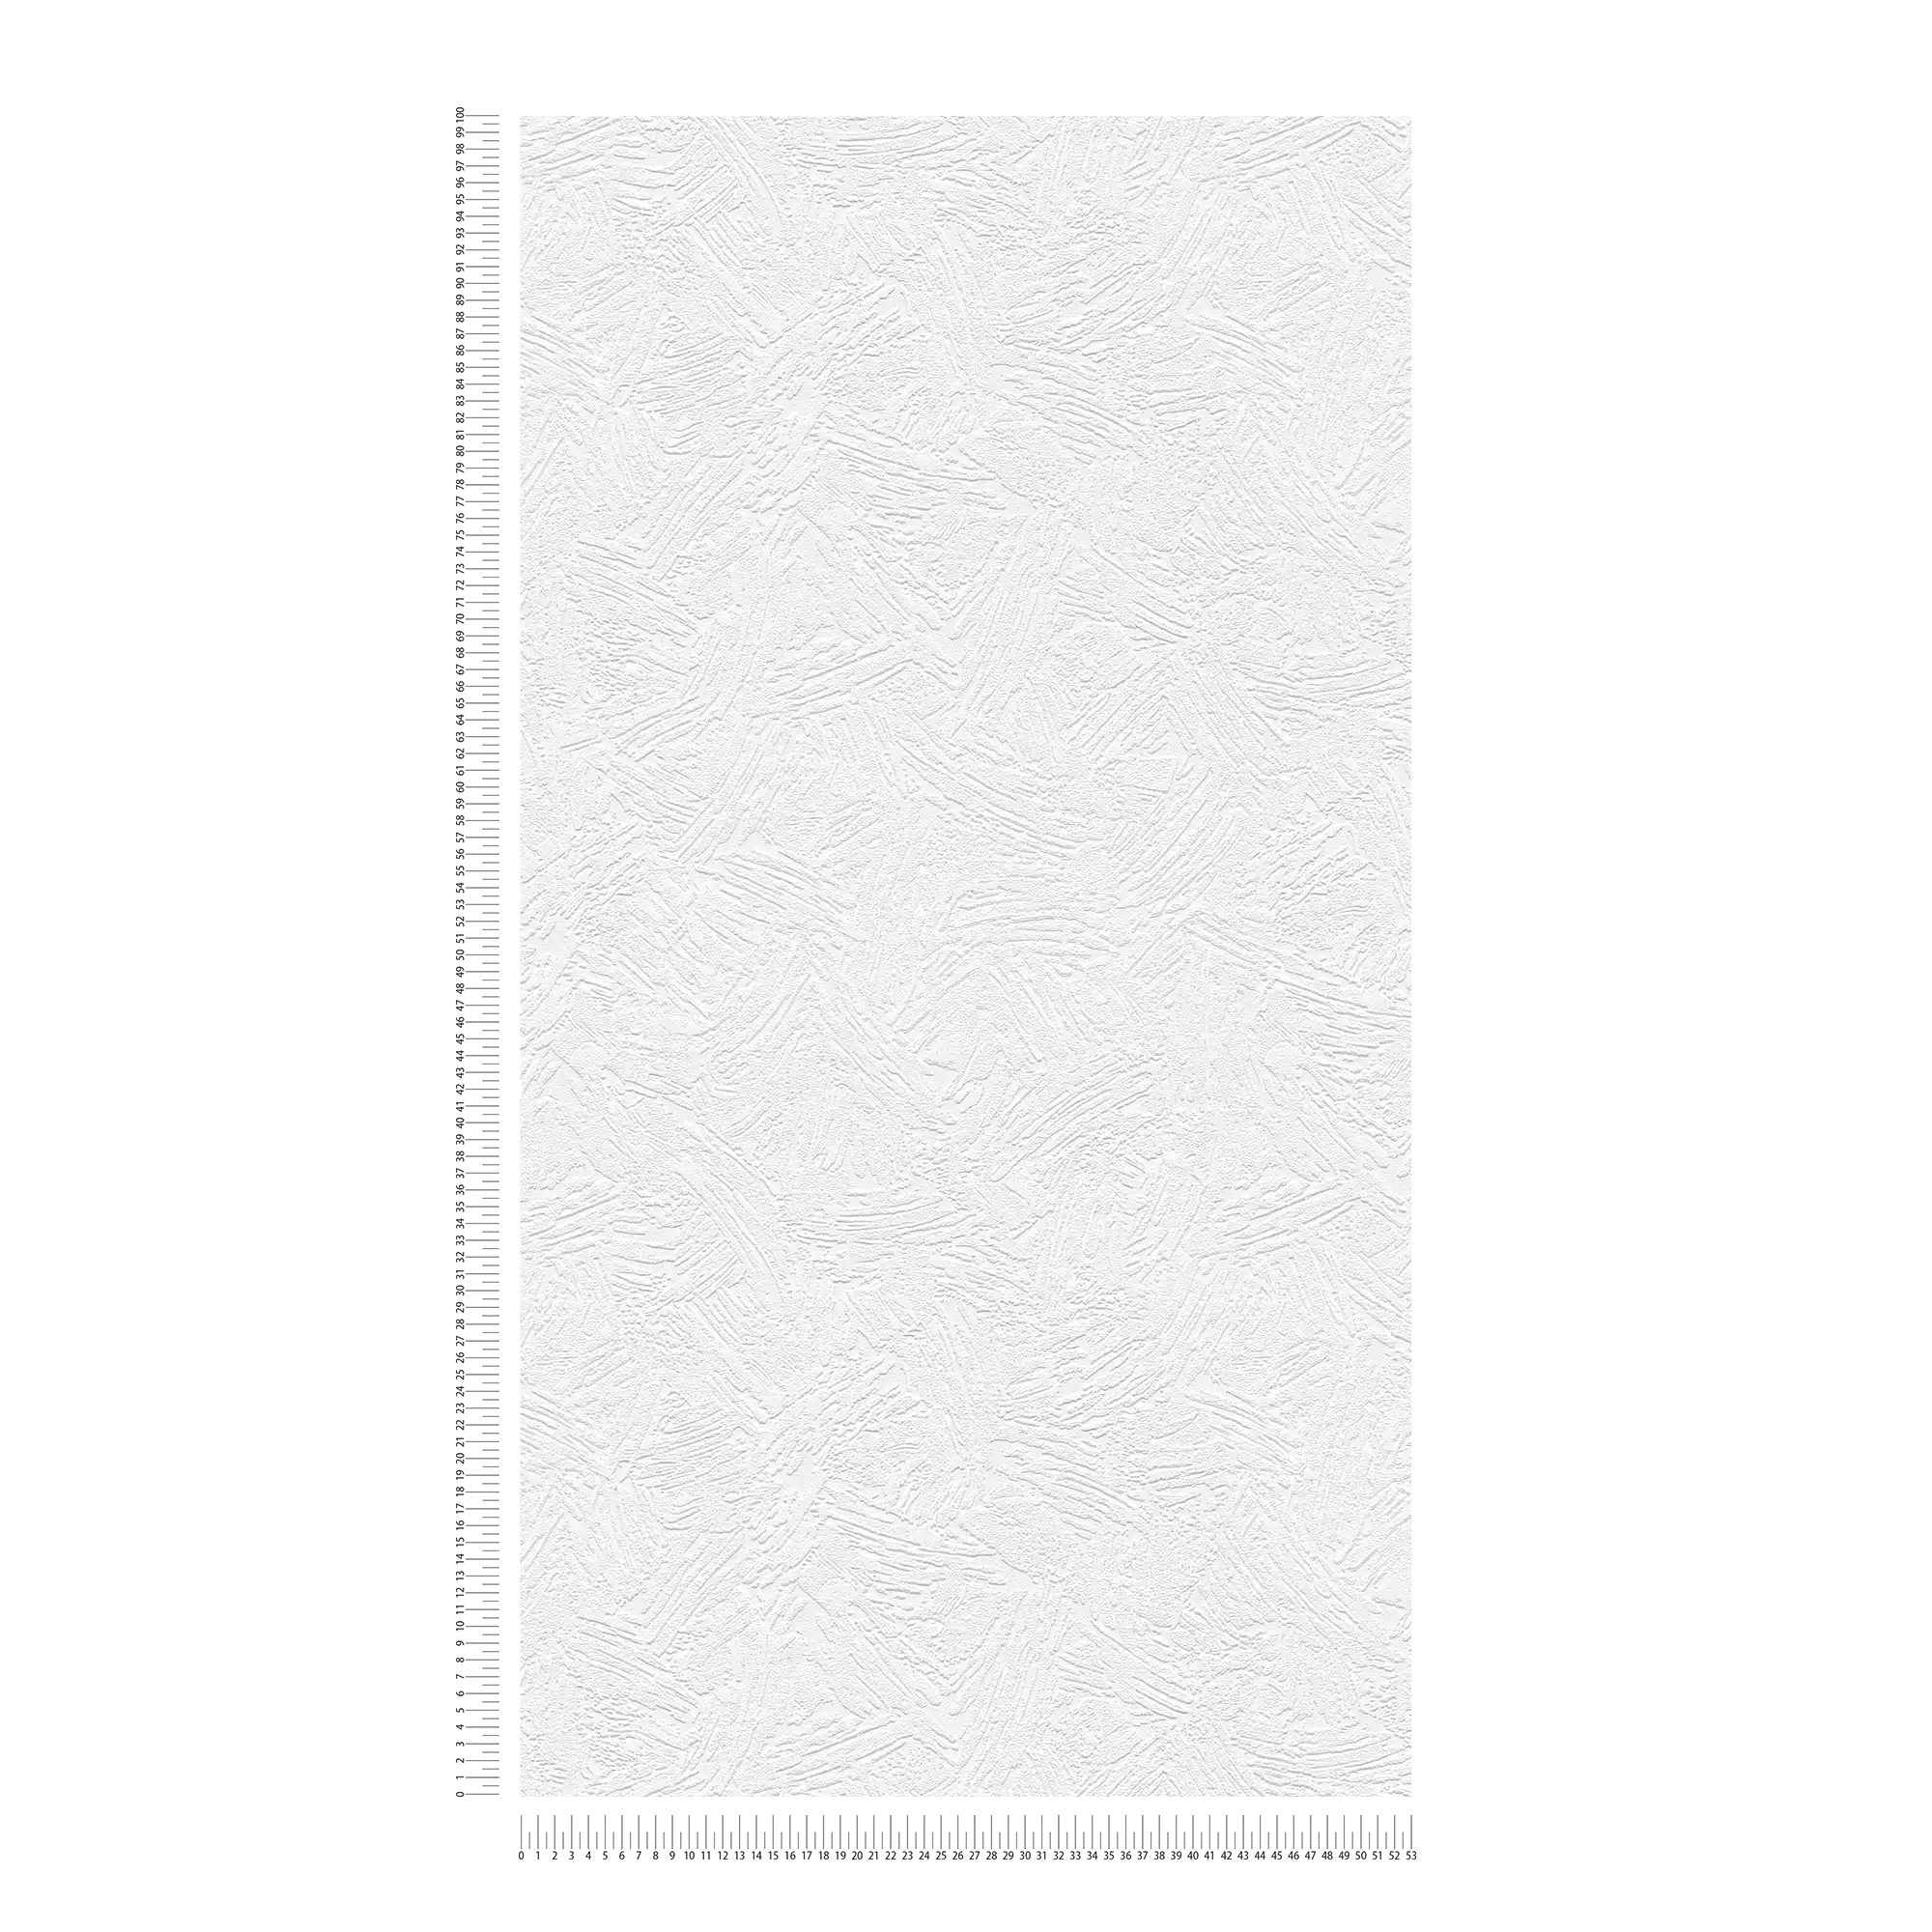             Carta da parati decorativa in tessuto non tessuto con motivo a trama - bianco
        